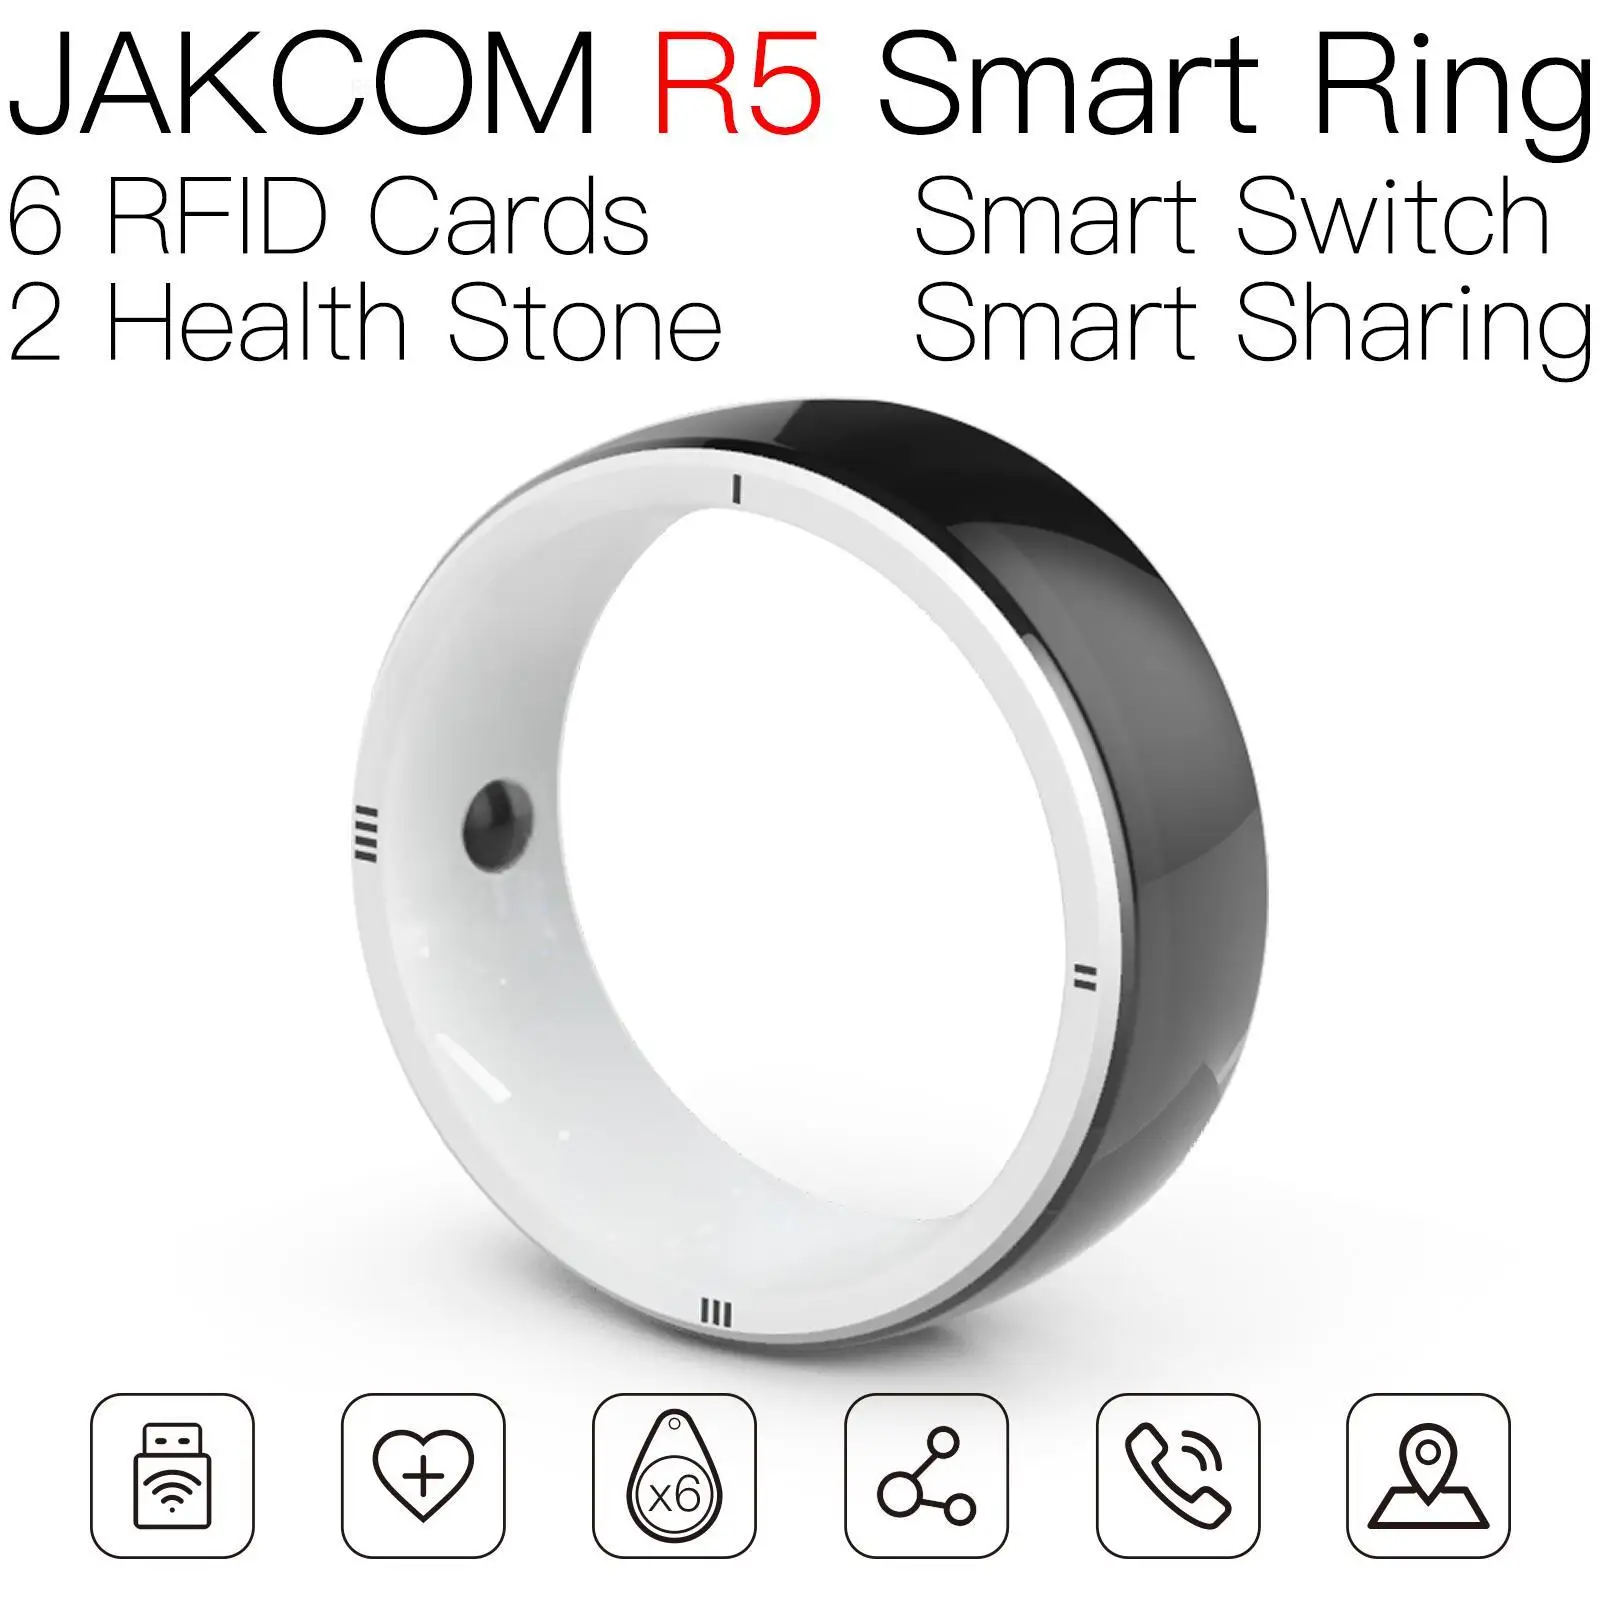 

JAKCOM R5 Smart Ring Nice than rfid 125khz etiquette clothing labels sheep ears nfc nail tag sticker metal vhf uhf car radio